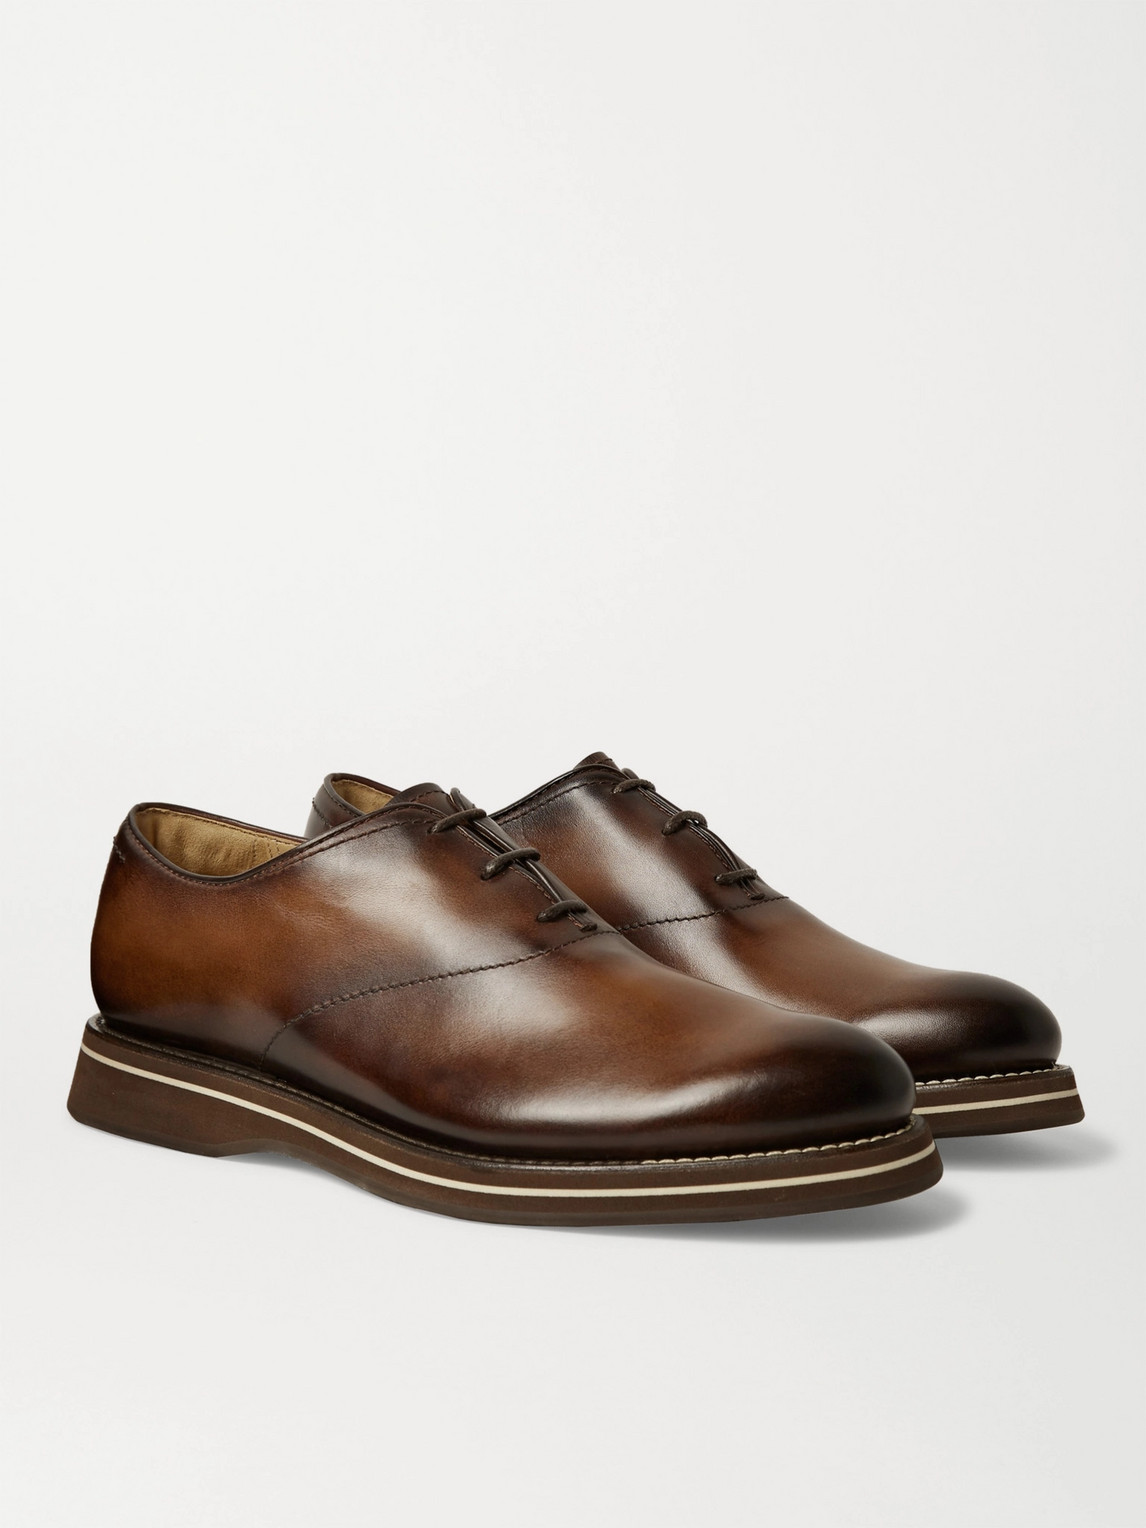 Berluti Alessio Padova Venezia Leather Oxford Shoes In Brown